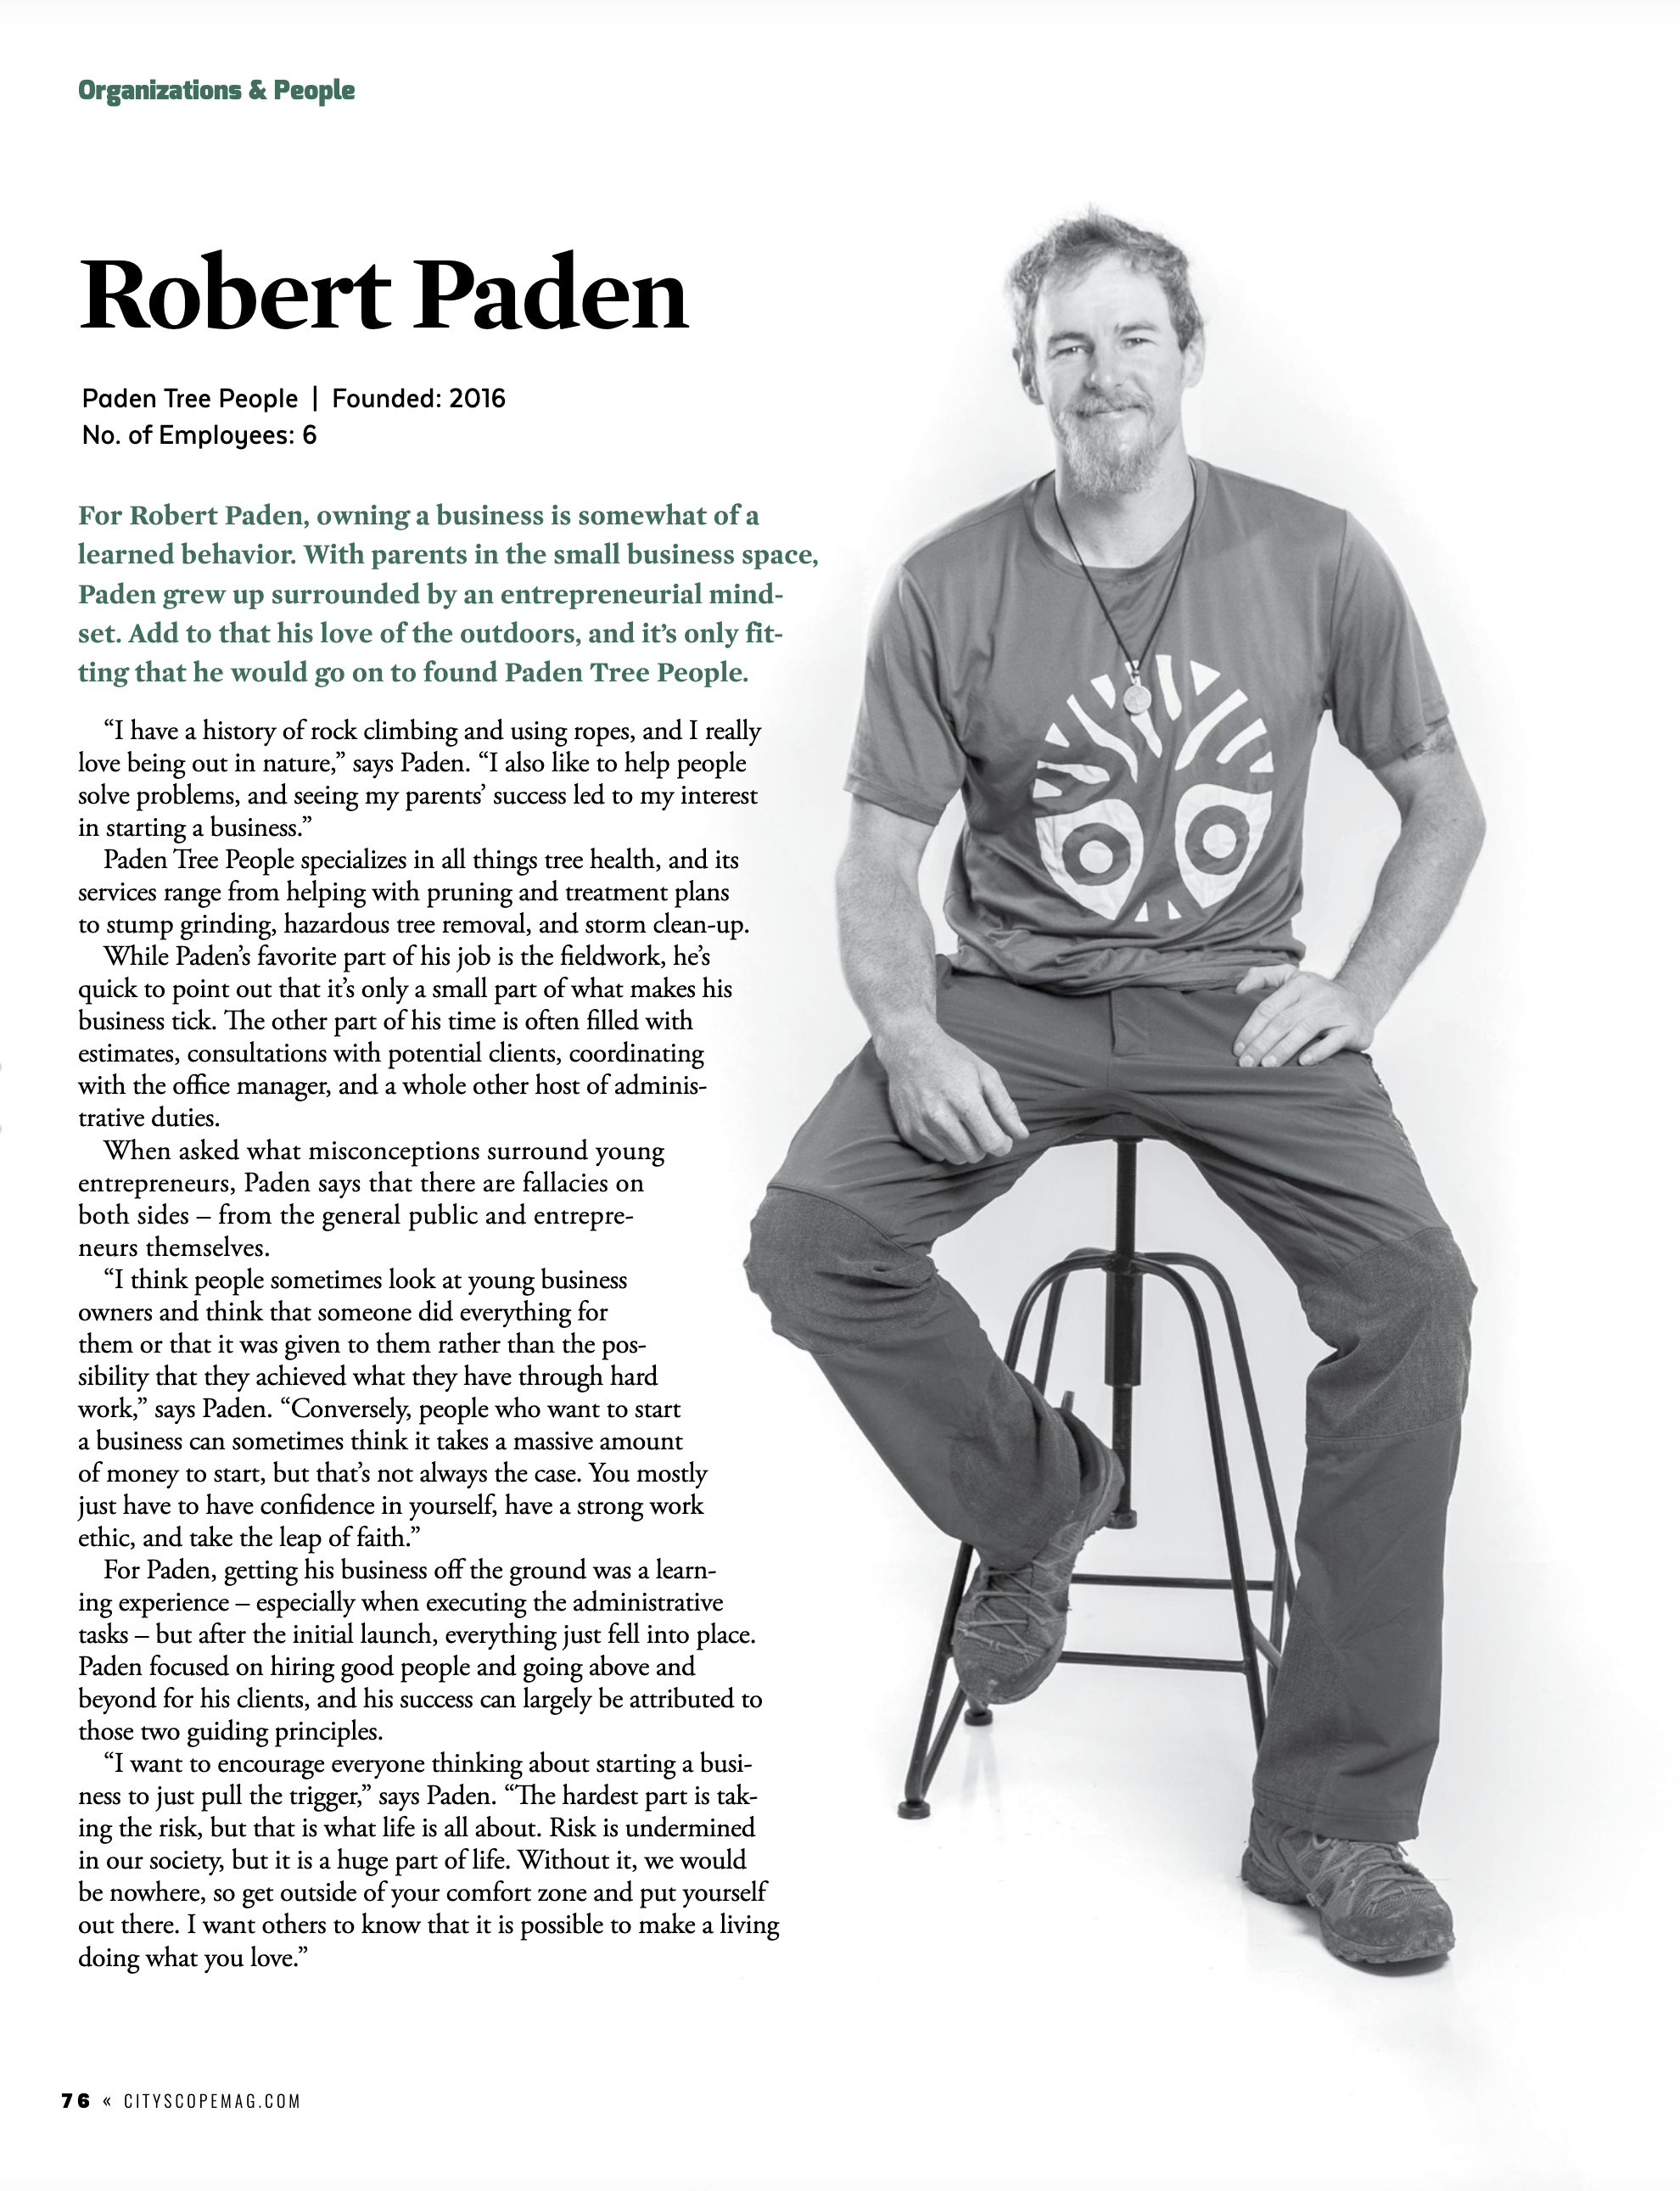 Robert Paden Featured in Cityscope Magazine